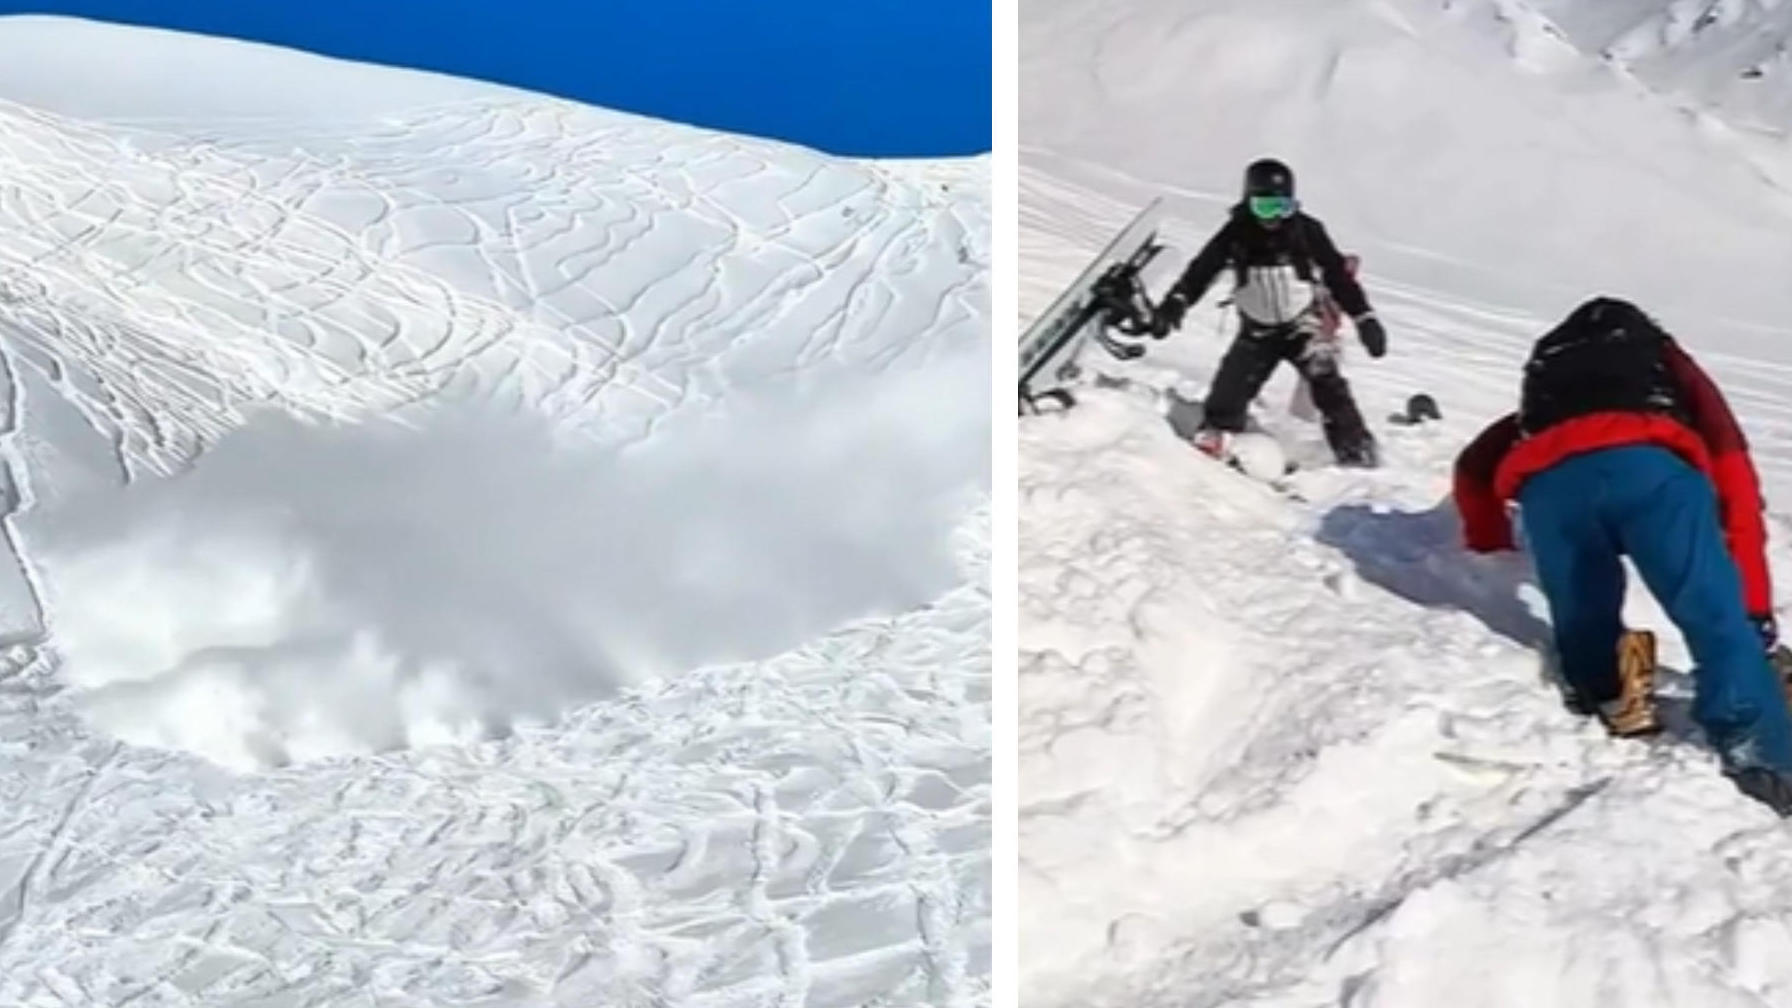 Los turistas provocan una avalancha: ¡entierran a los esquiadores!  Estás conduciendo fuera de pista